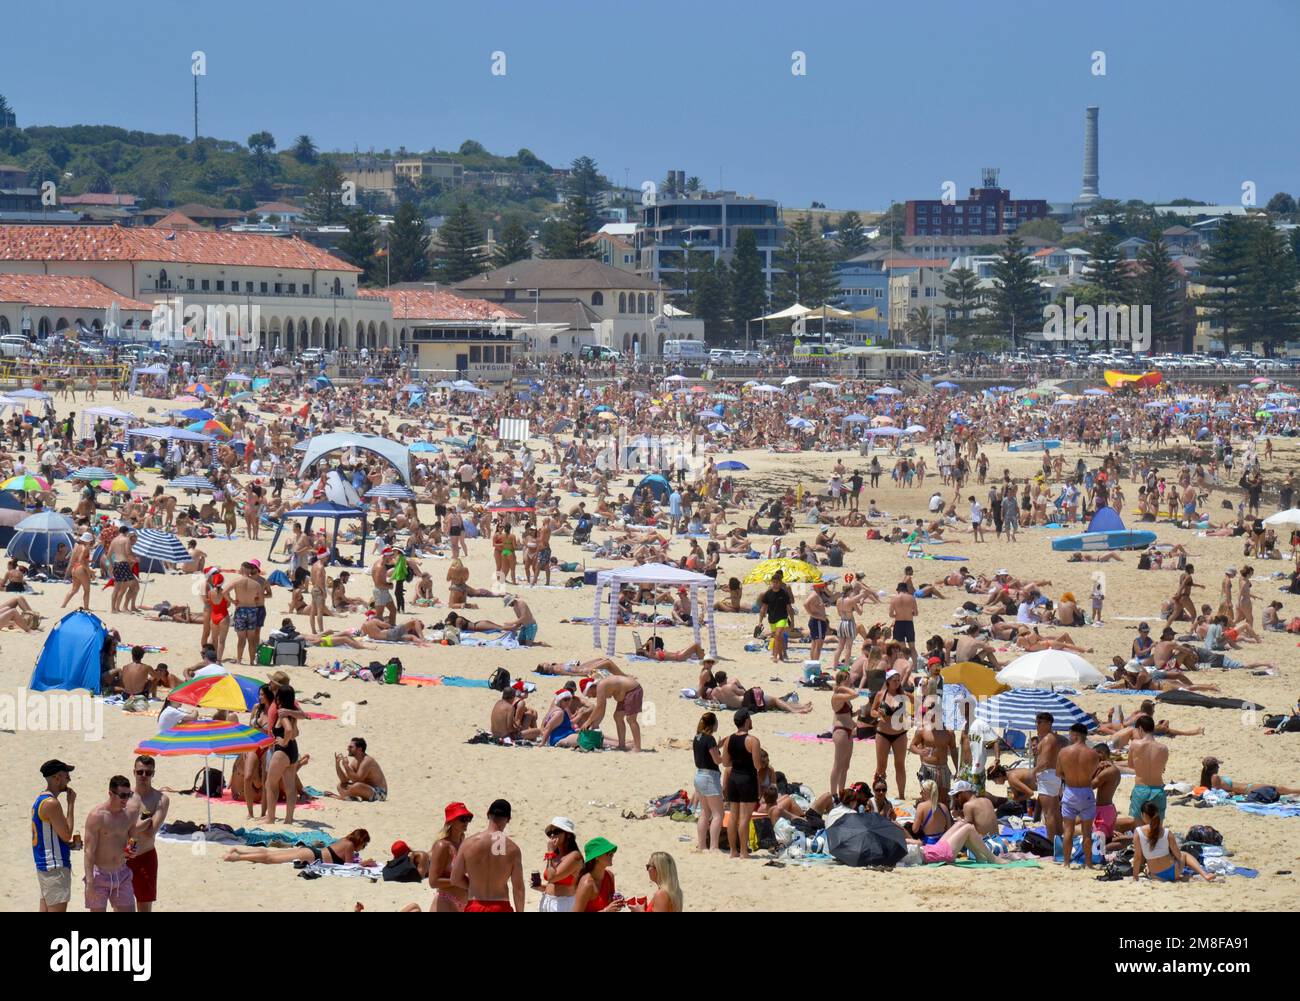 Packed Bondi Beach à l'extérieur de Sydney le jour de Noël est plein de routards vêtus de chapeaux de Santa appréciant le bronzage, la natation et le soleil australien Banque D'Images